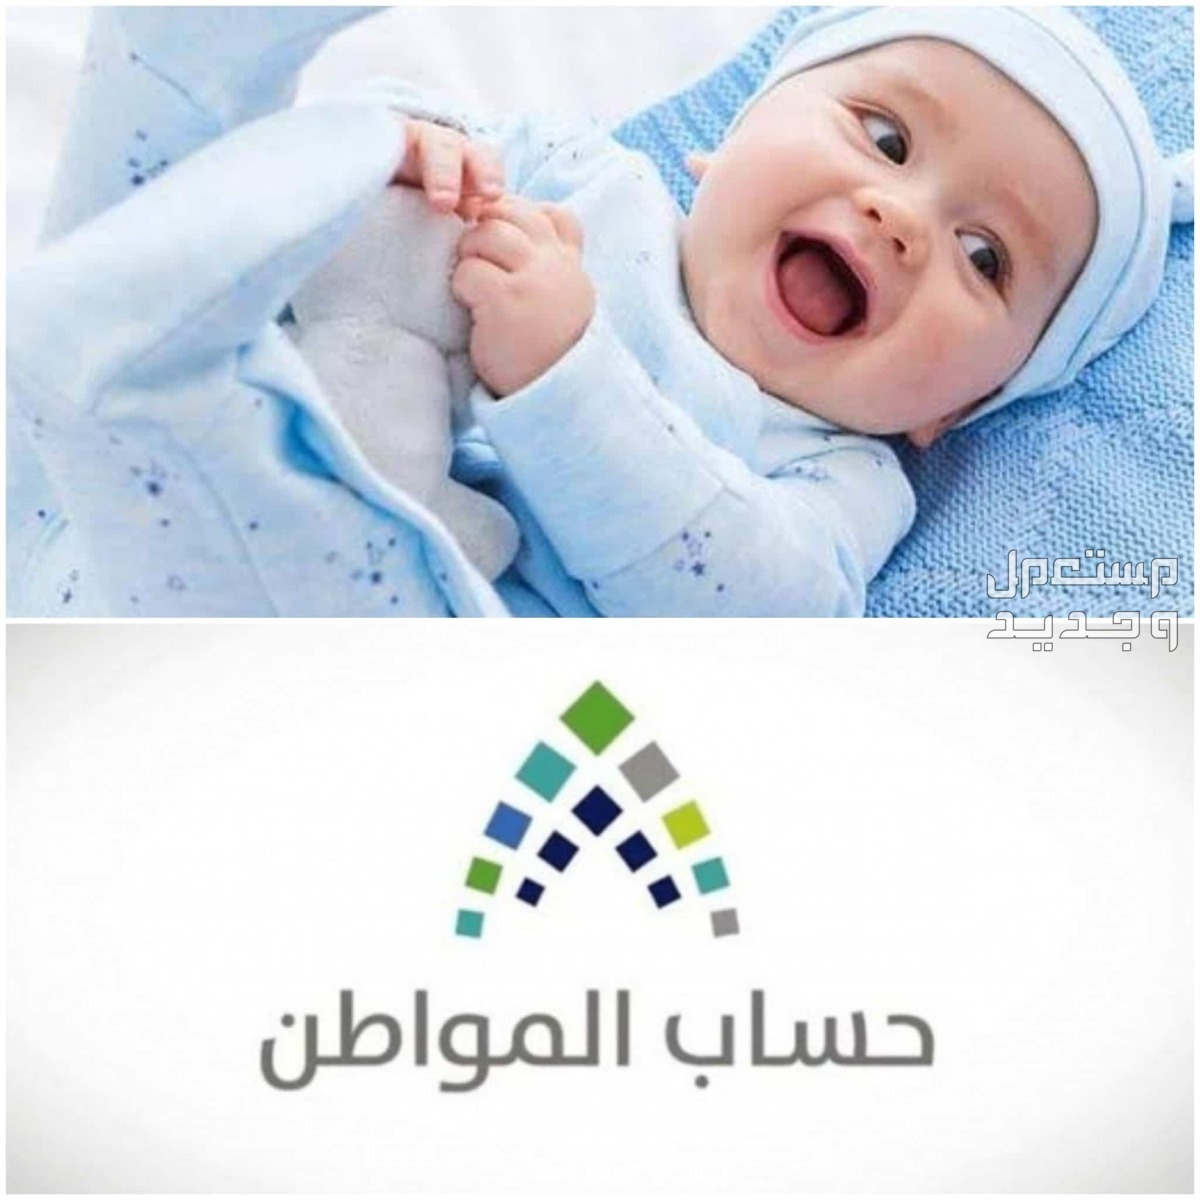 طريقة تسجيل المولود الجديد في حساب المواطن 1445 في عمان تسجيل المولود الجديد في حساب المواطن